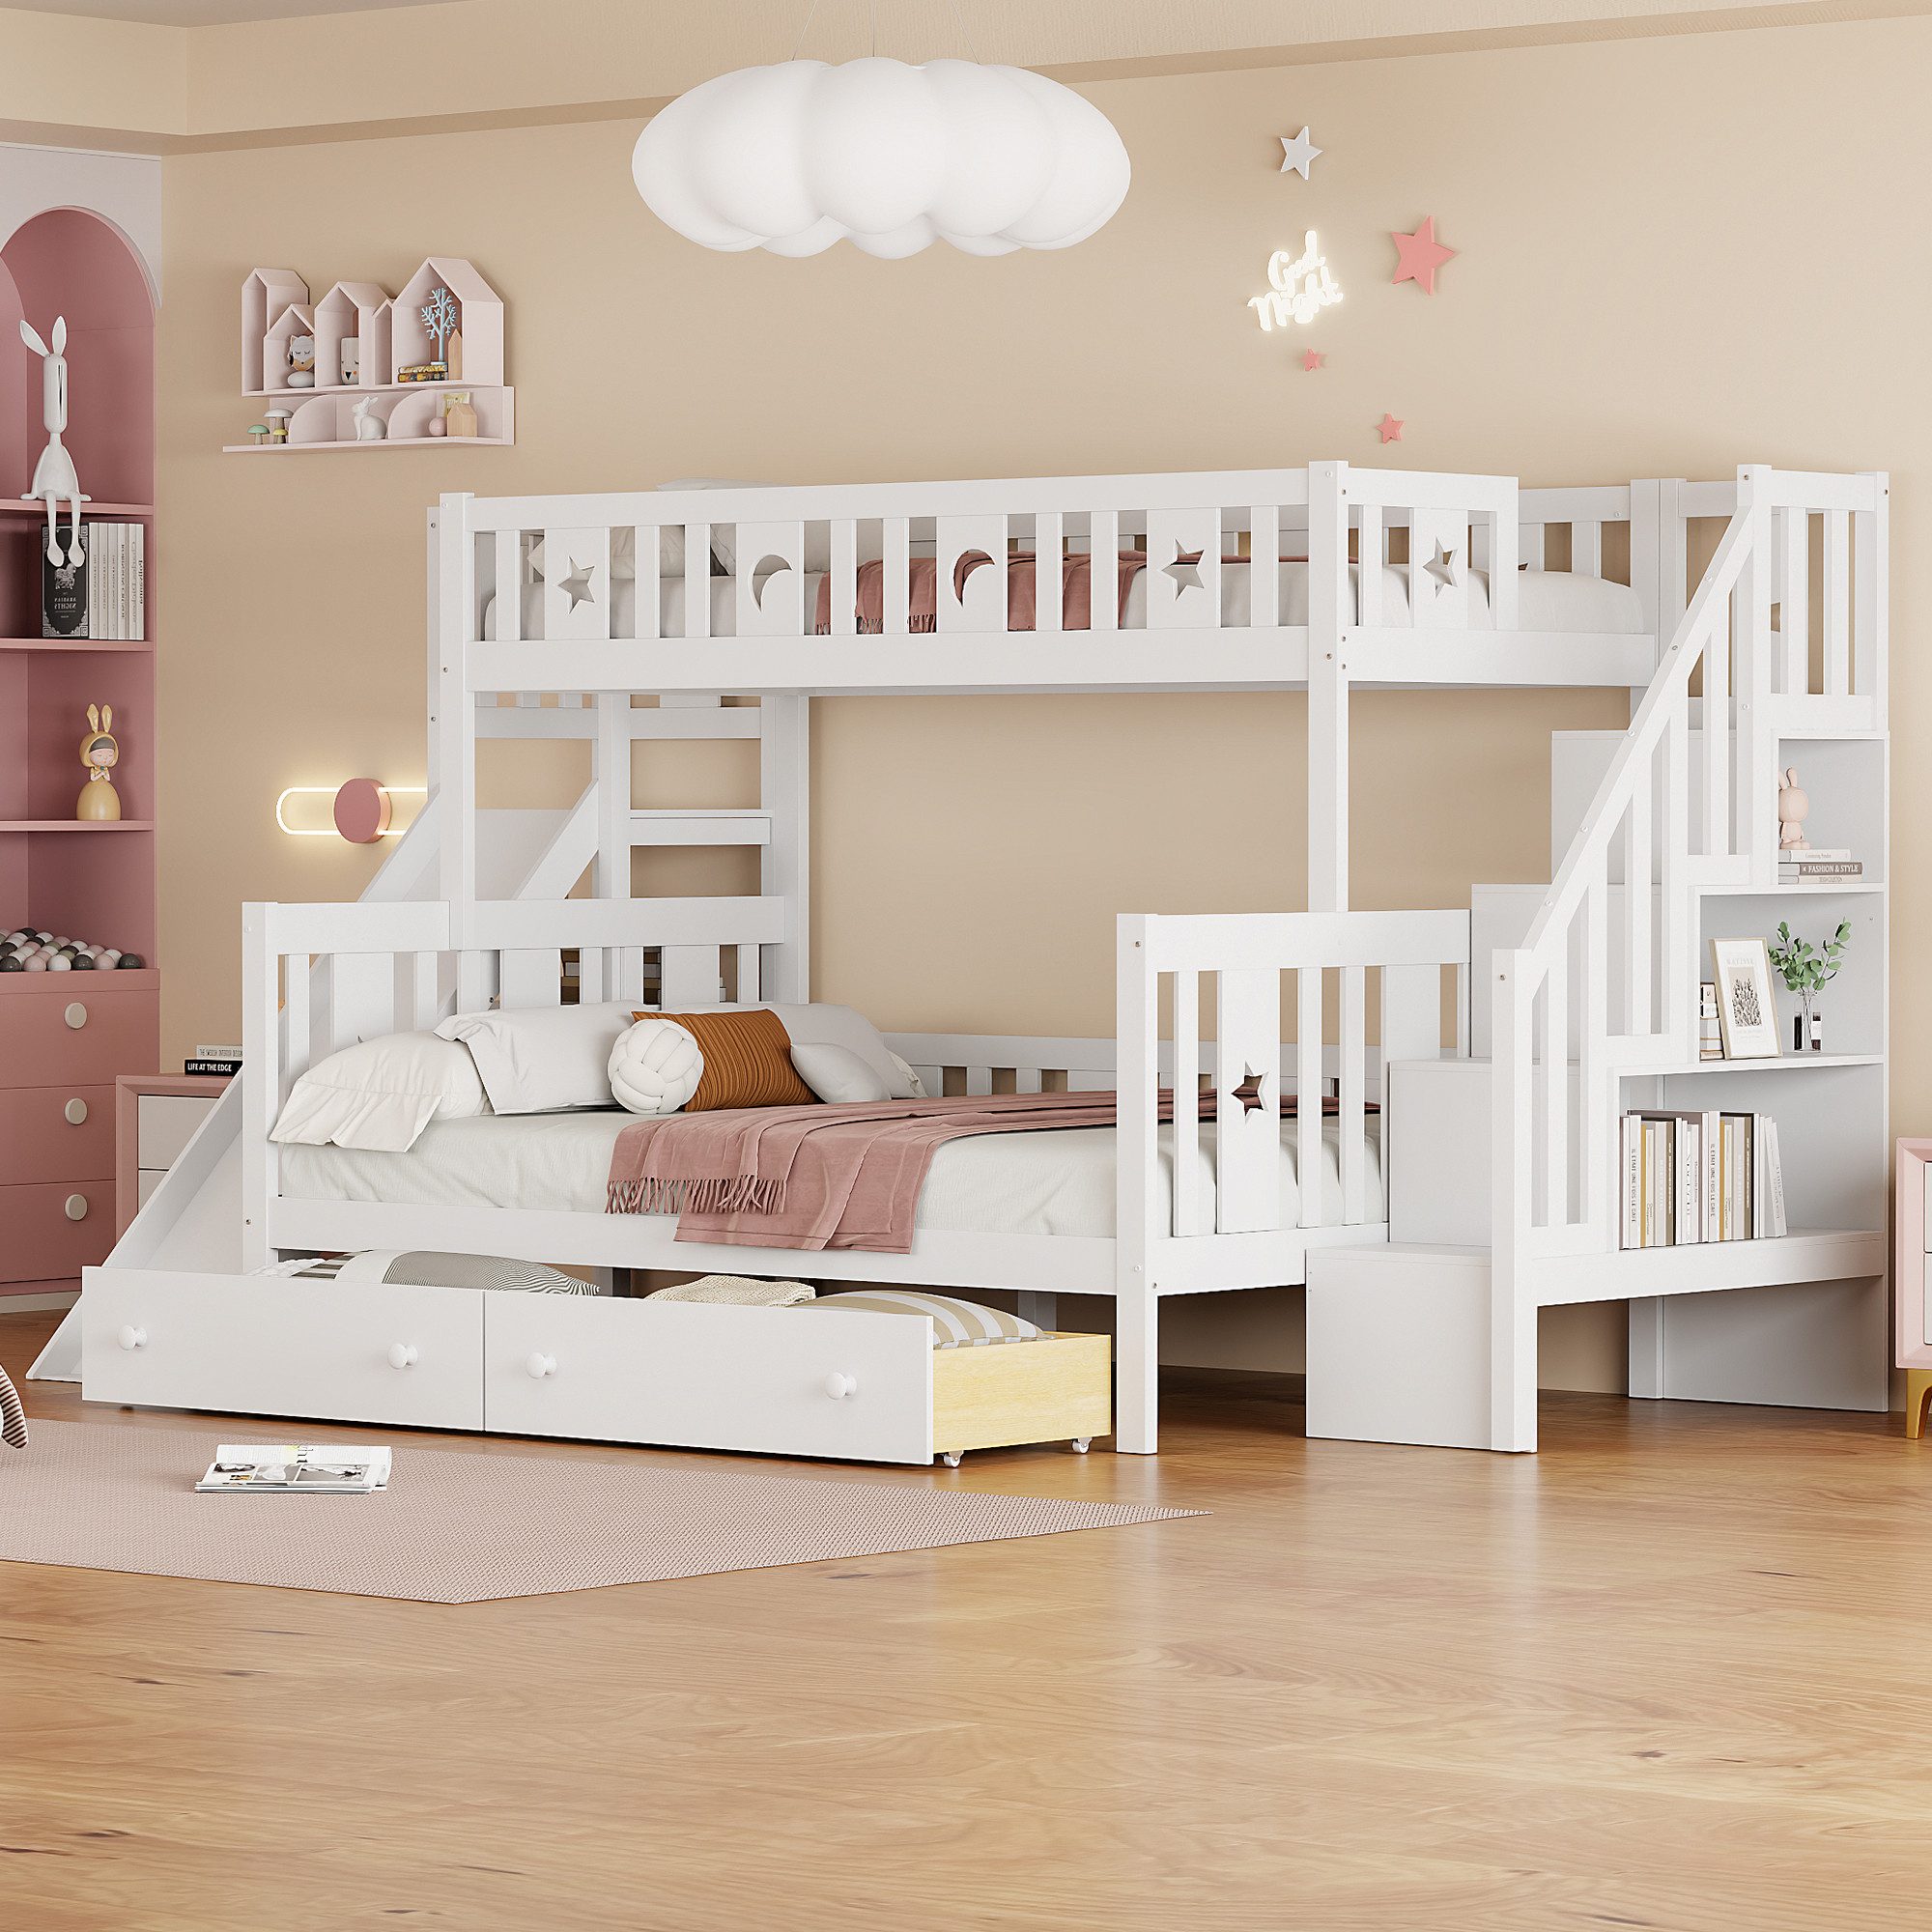 OKWISH Etagenbett Kinderbett mit Sicherheitstreppe, 2 großen Schubladen und Lattenrost (90*200/140*200cm), ohne Matratze